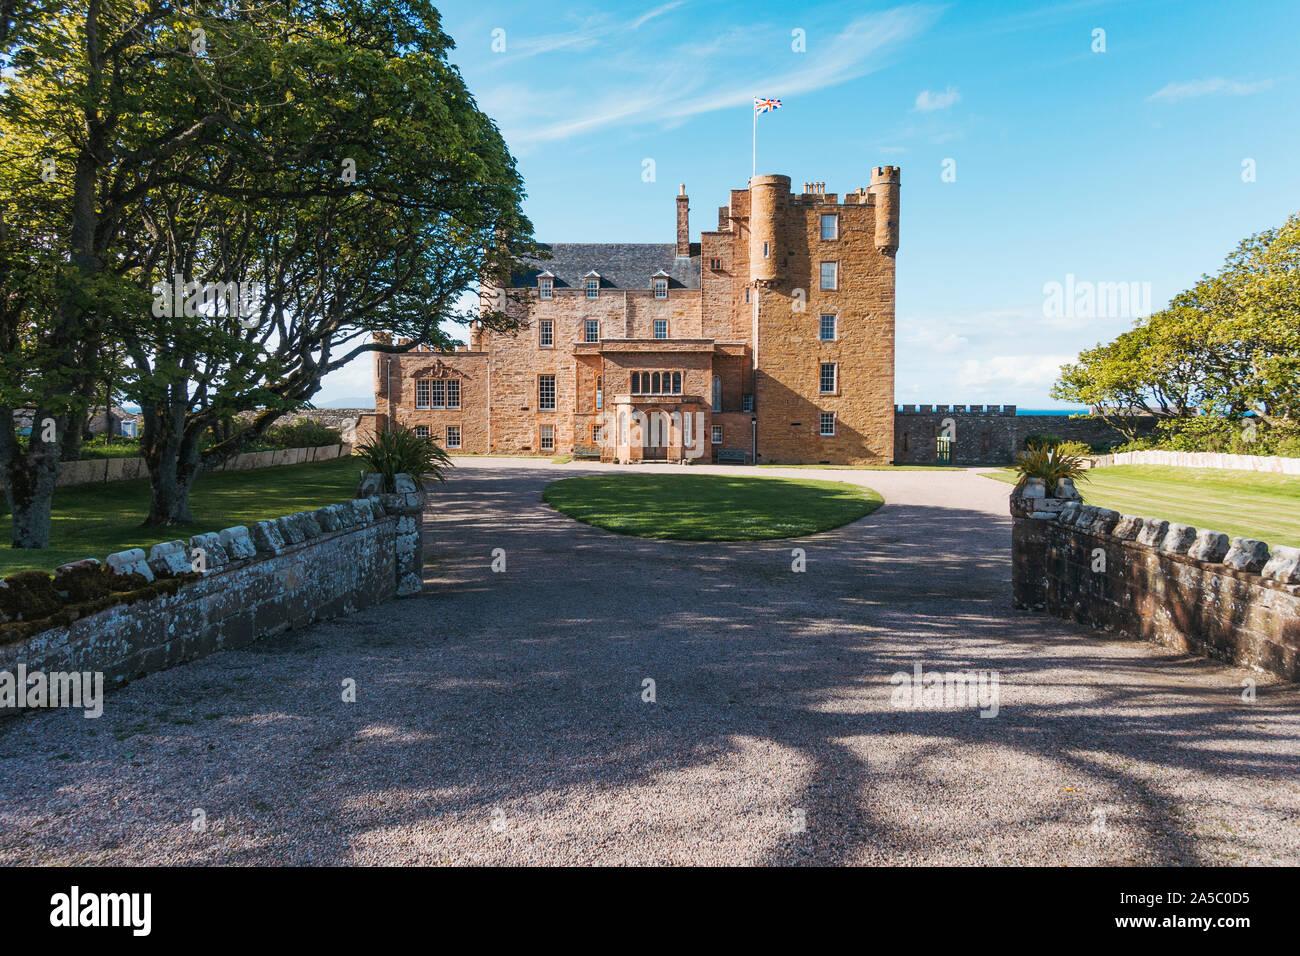 Le Château de Mey, construit au milieu du 16e siècle, ont acheté et restauré dans les années 1950 par la reine Elizabeth la reine mère. Maintenant ouvert aux touristes de mai à septembre Banque D'Images